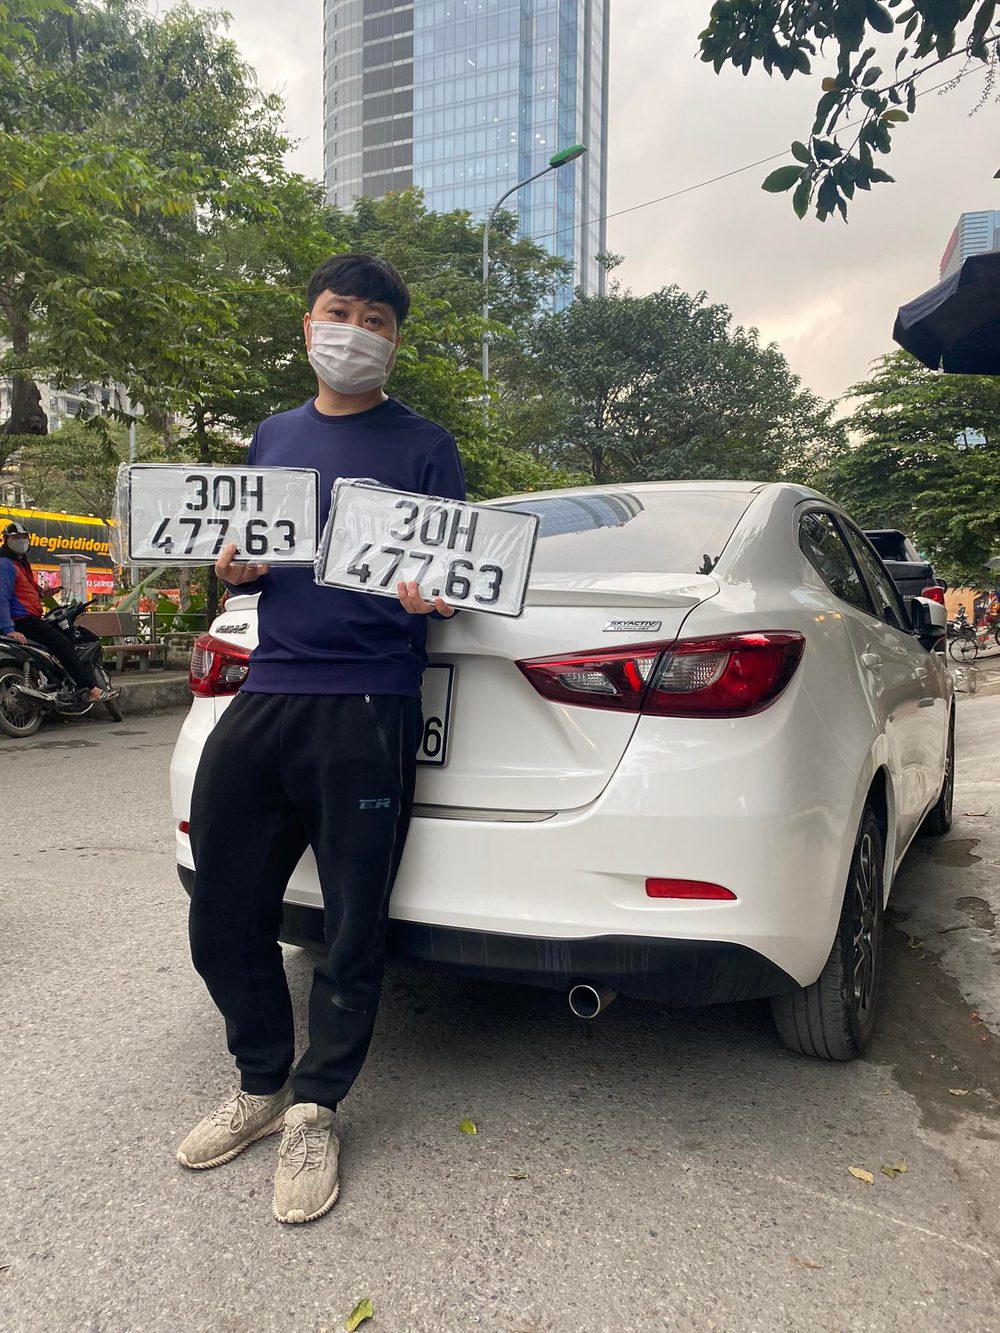 Chuyên gia nổi tiếng thách thức tài xế taxi so găng và cuộc thi lần đầu có ở Việt Nam - Ảnh 2.